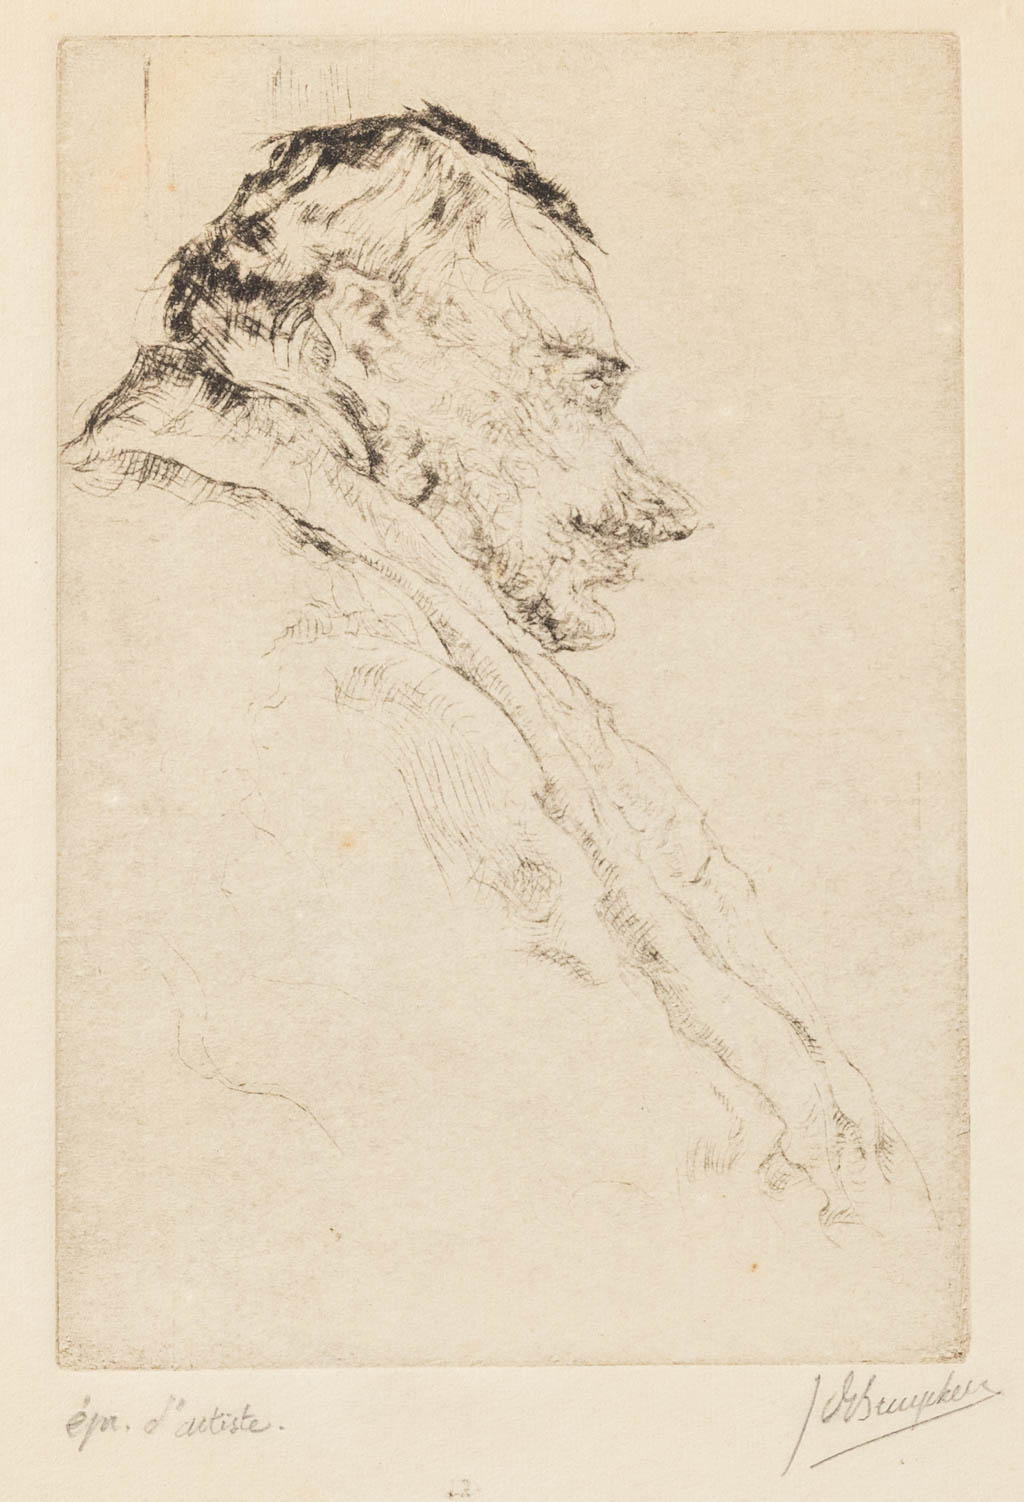 Jules DE BRUYCKER (1870-1945) 'Ets' getekend 'Epreuve D'Artiste'. (W:8 x H:11,5 cm)